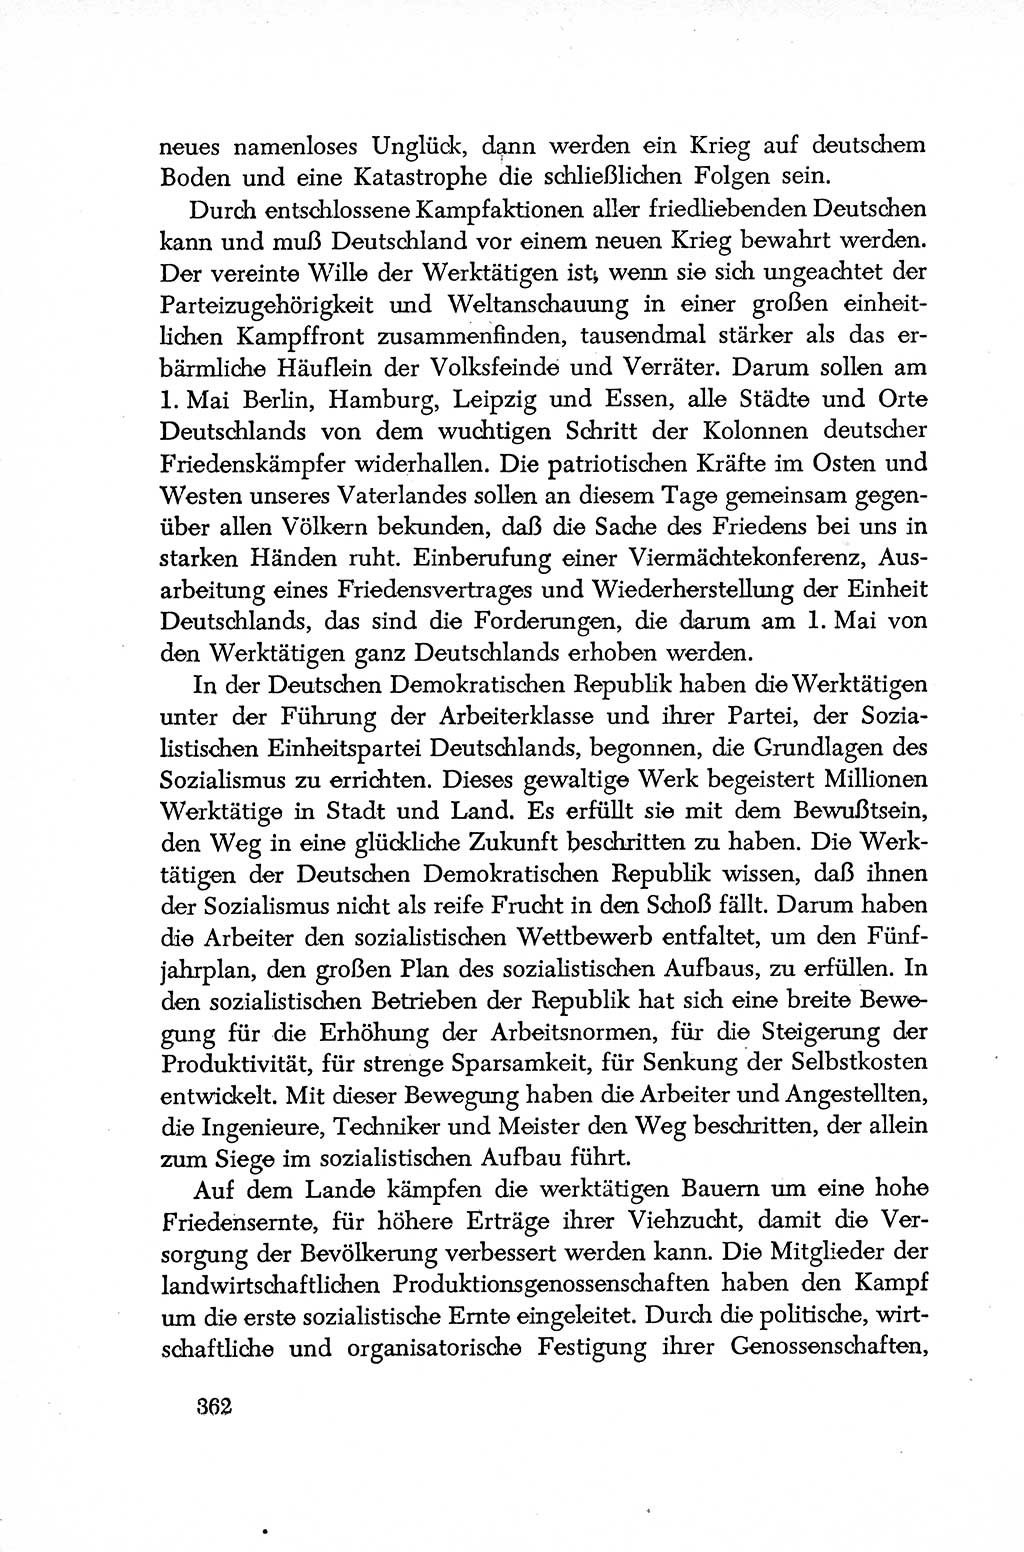 Dokumente der Sozialistischen Einheitspartei Deutschlands (SED) [Deutsche Demokratische Republik (DDR)] 1952-1953, Seite 362 (Dok. SED DDR 1952-1953, S. 362)